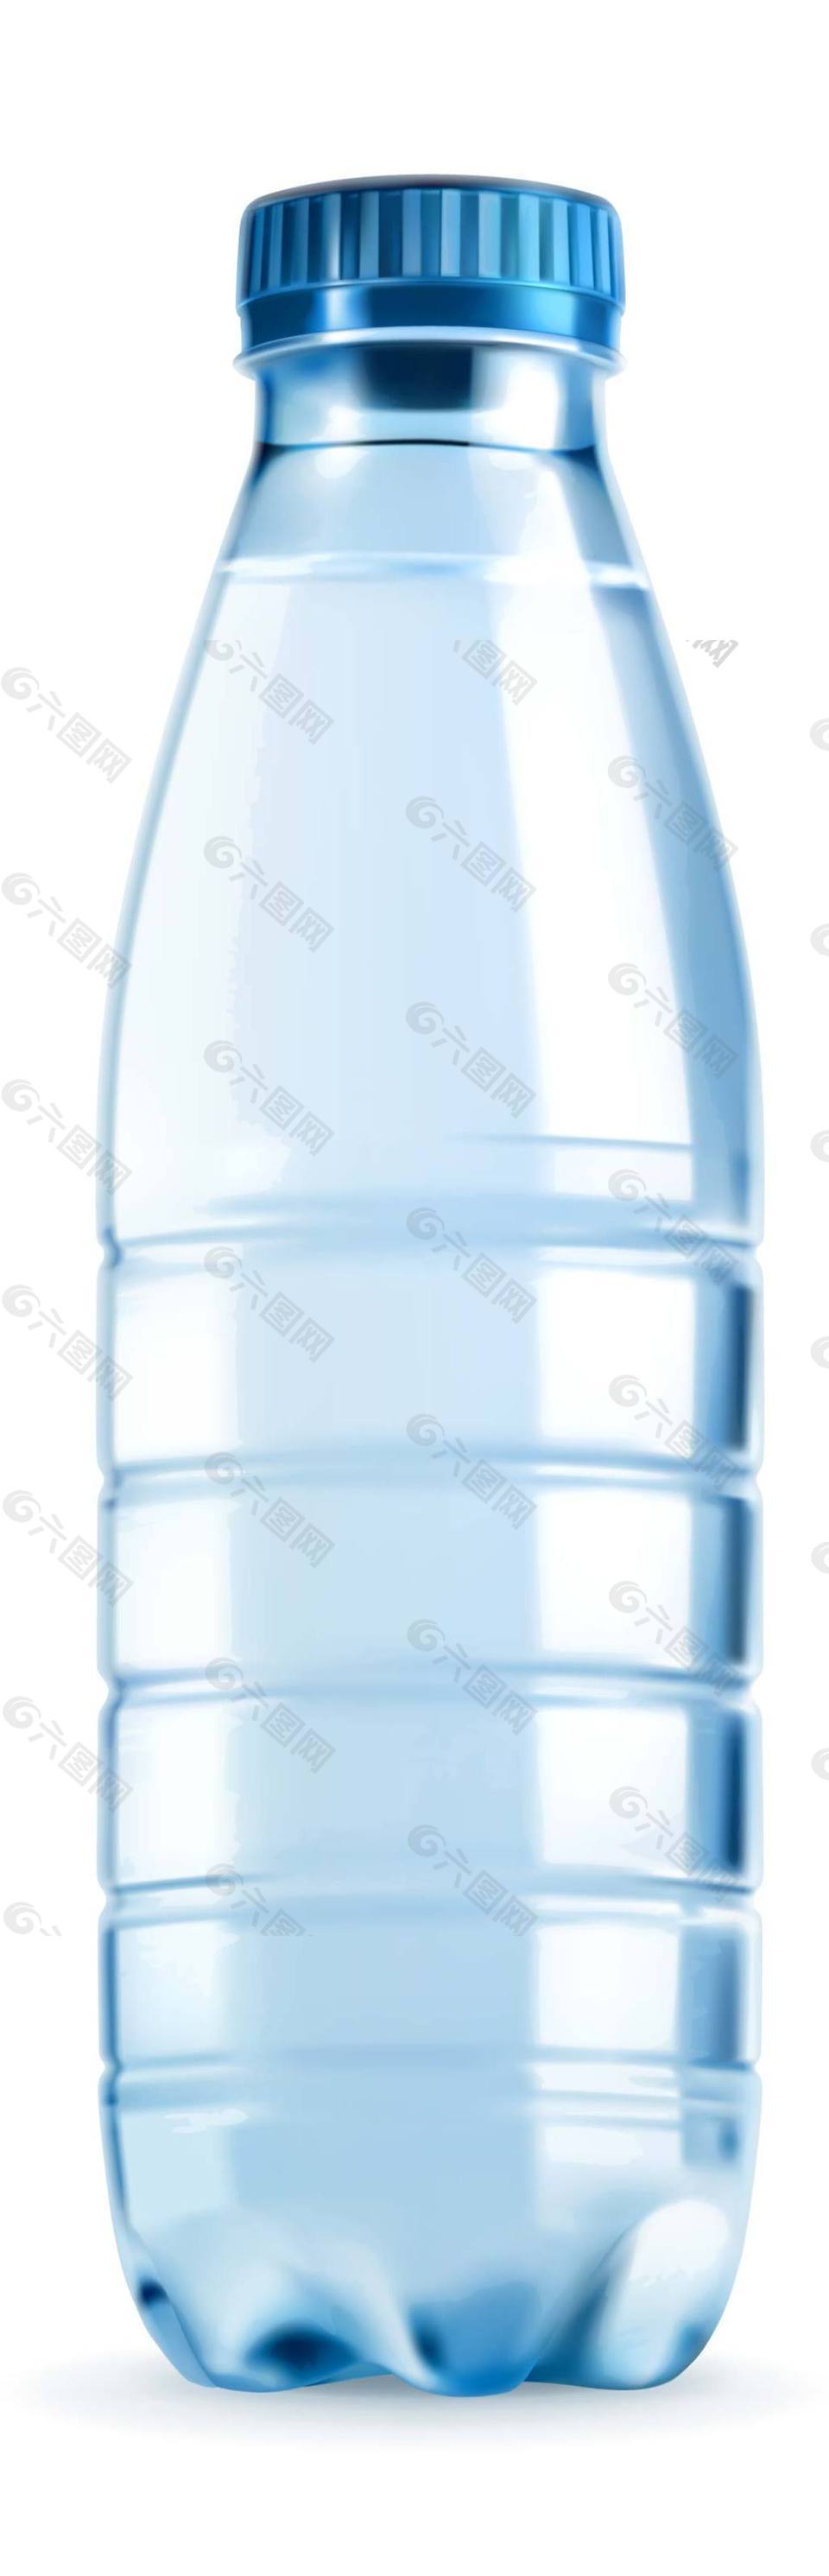 塑料矿泉水瓶矢量素材下载